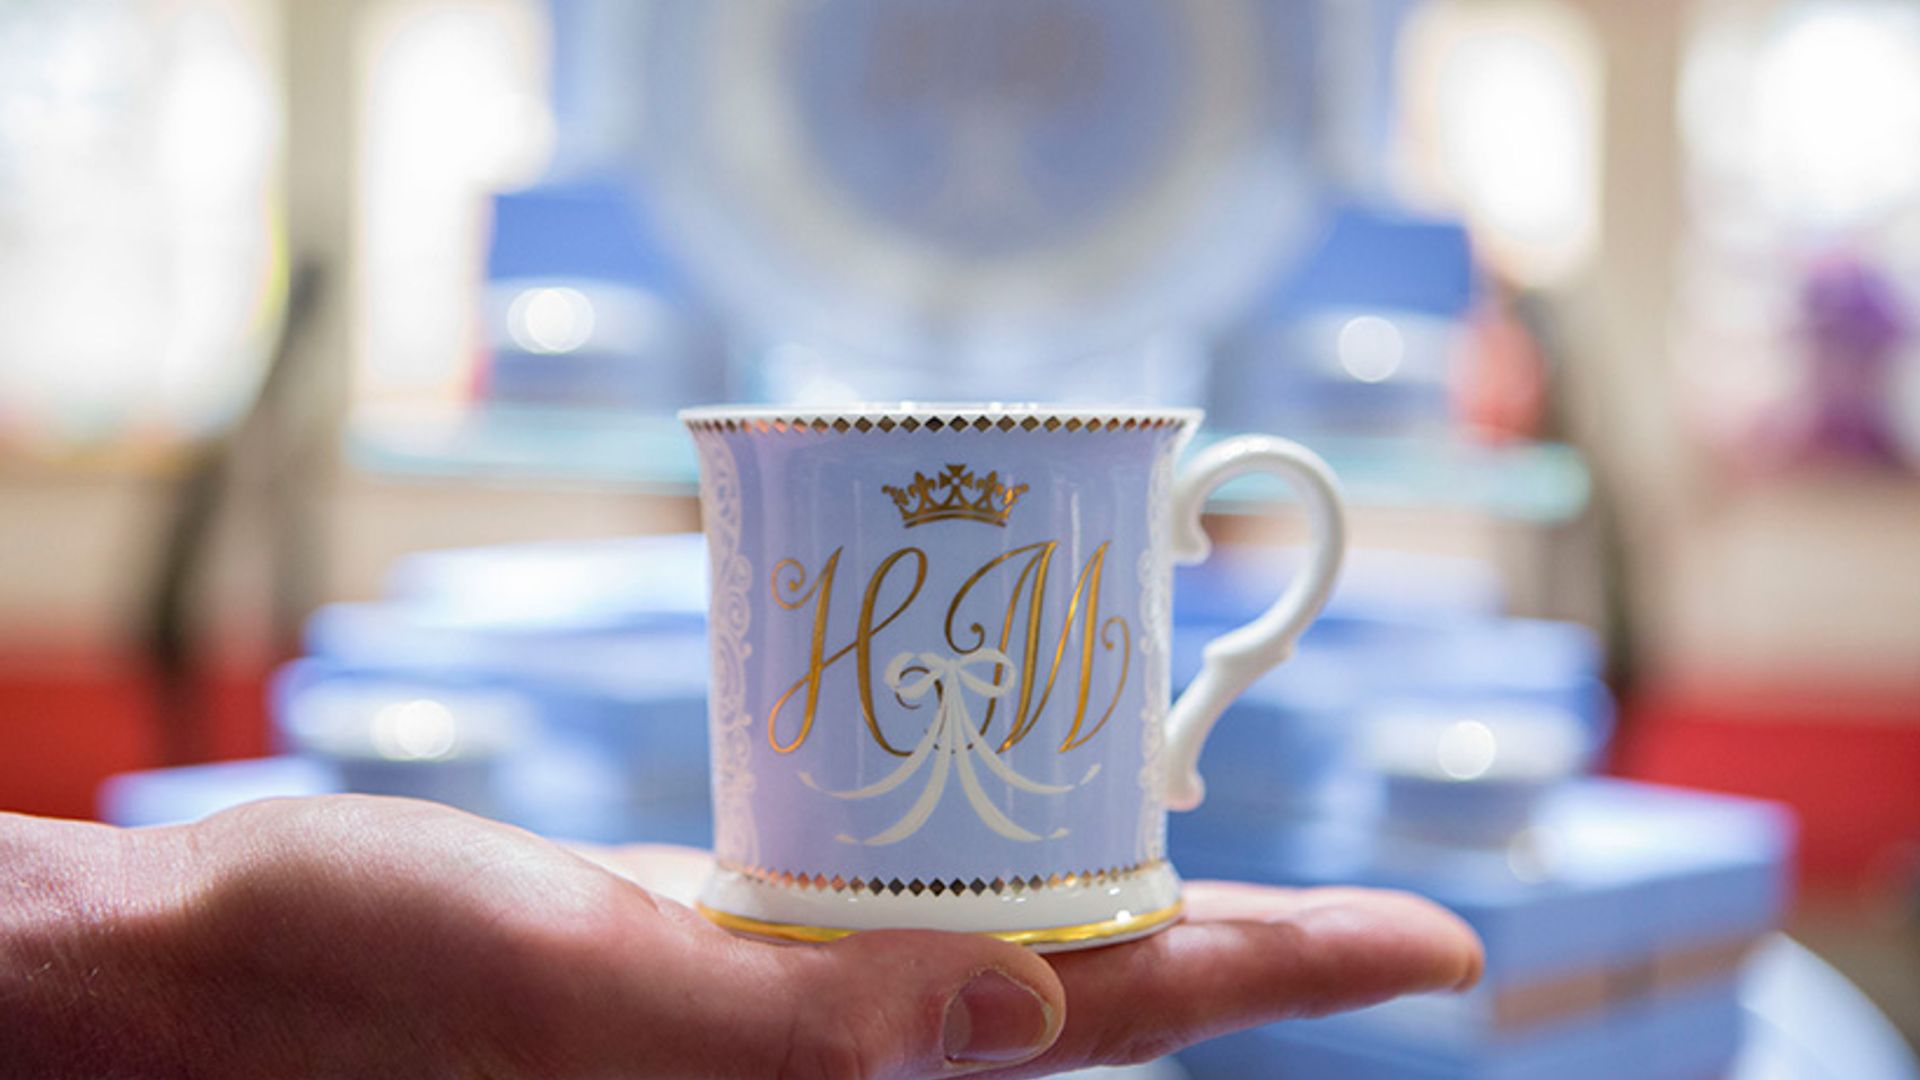 Prince Harry And Meghan Markle Royal Wedding Commemorative Coffee Mug 